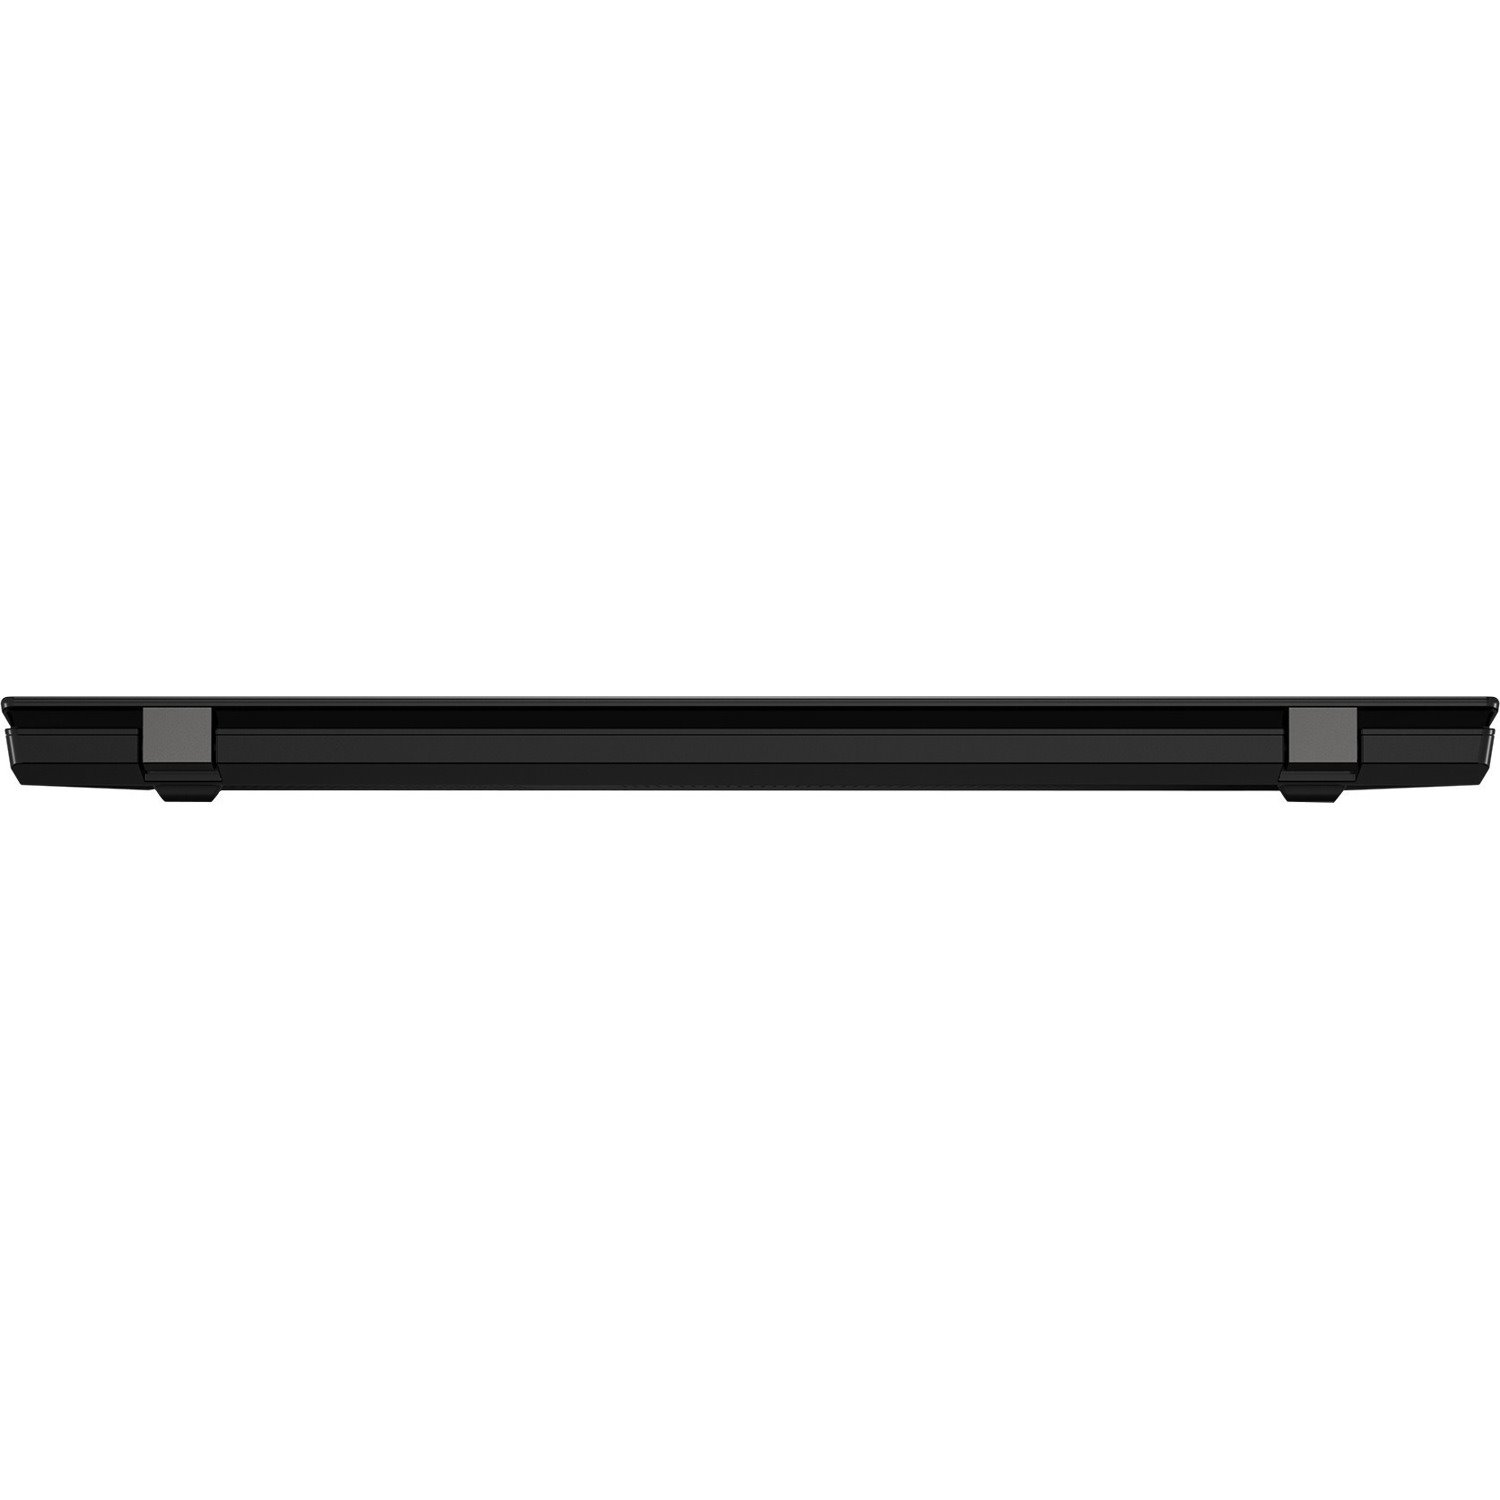 Lenovo ThinkPad L15 Gen2 20X3005UAU 39.6 cm (15.6") Notebook - Full HD - 1920 x 1080 - Intel Core i5 11th Gen i5-1135G7 Quad-core (4 Core) 2.40 GHz - 8 GB Total RAM - 256 GB SSD - Black